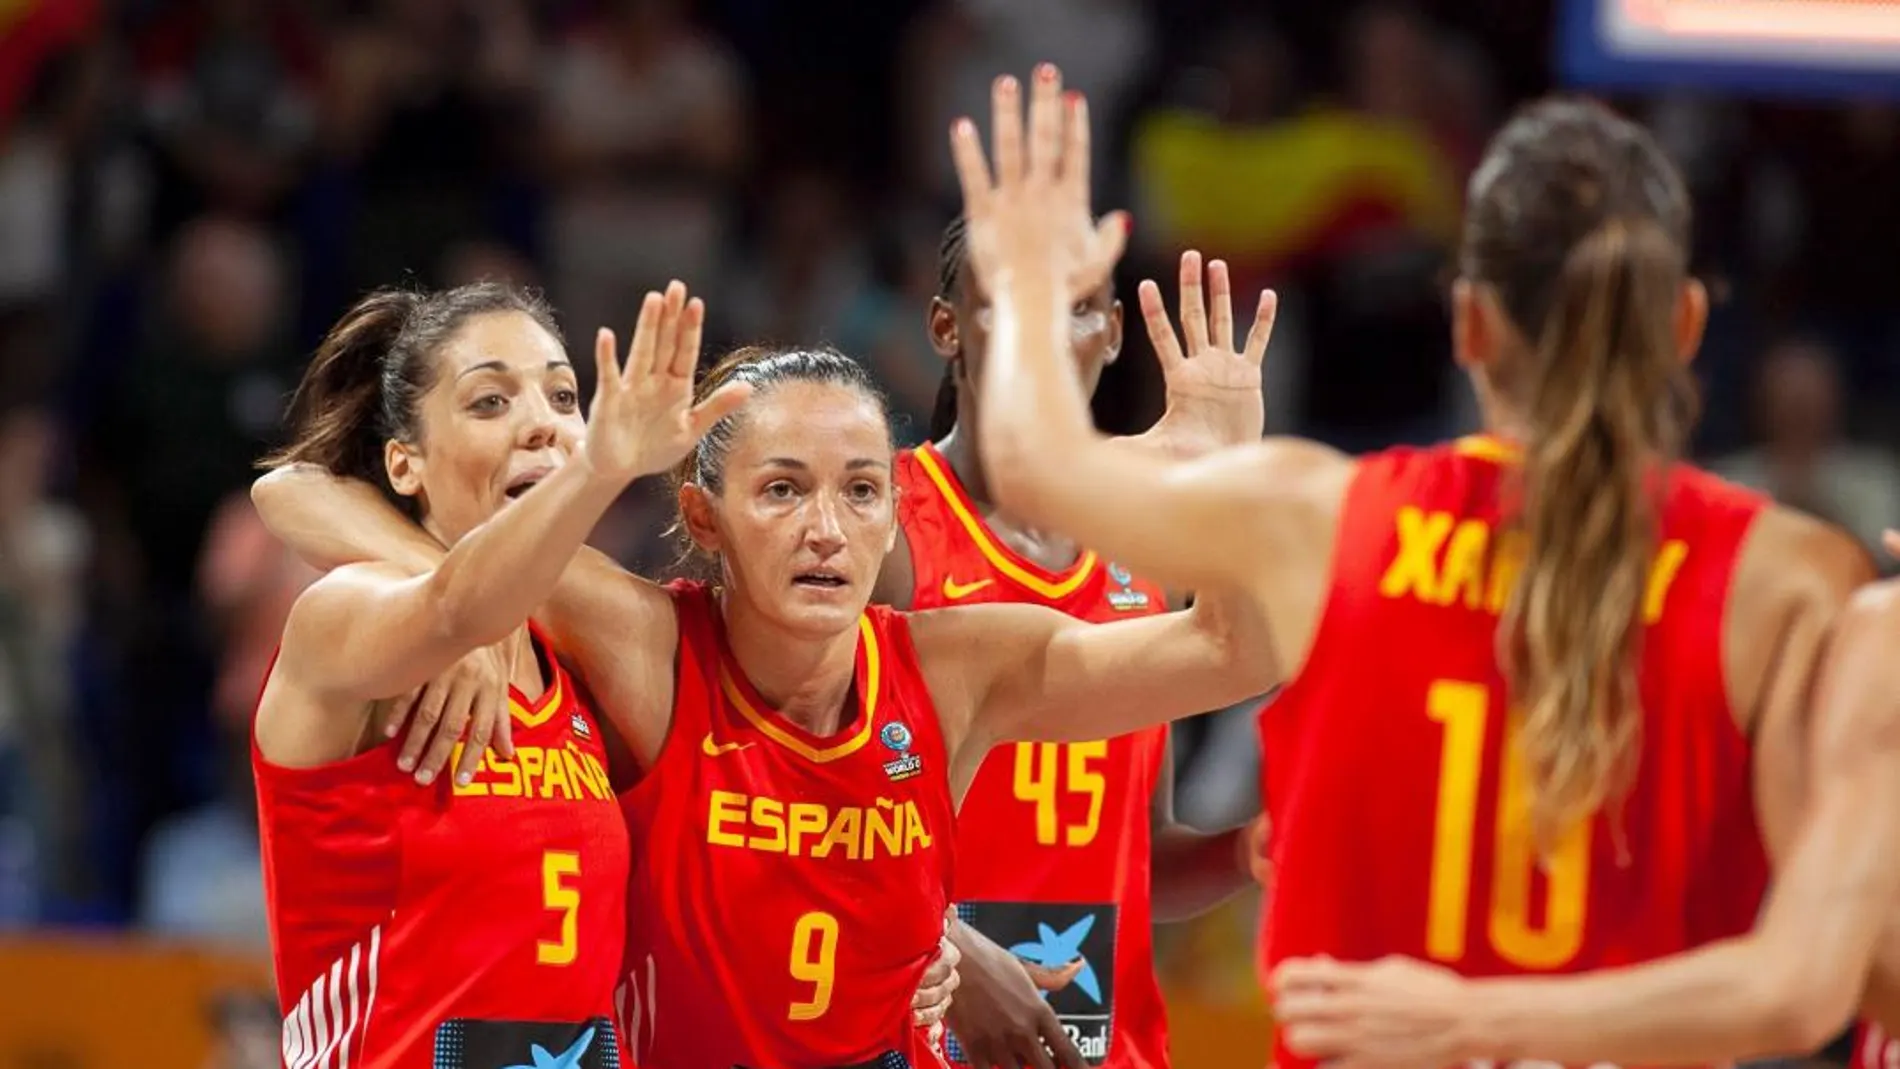 Las jugadoras de la selección española Cristina Ouviña (i) y Laia Palau (c) durante un partido de este Mundial de Baloncesto / Efe